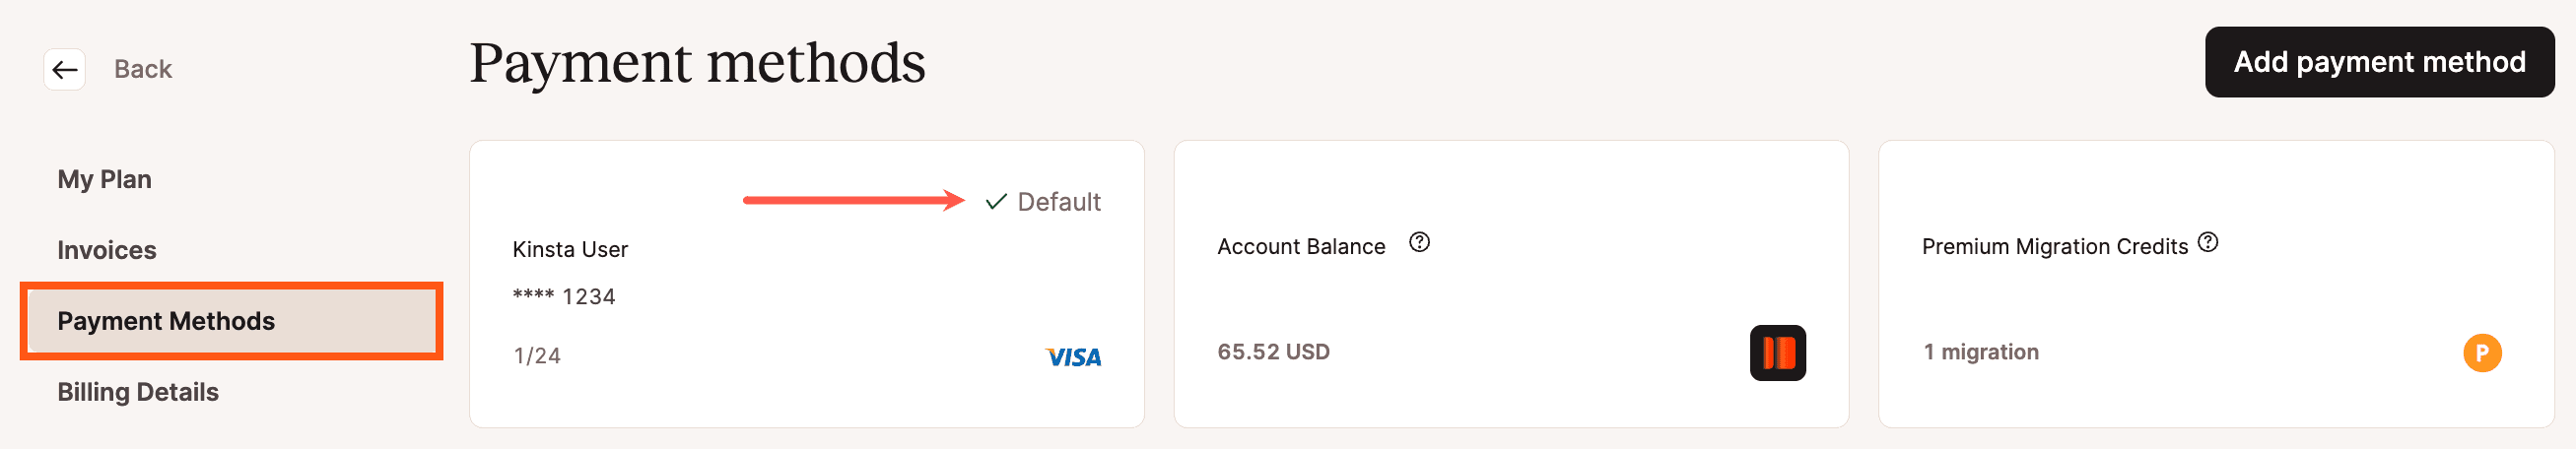 Um novo cartão de crédito adicionado no MyKinsta.